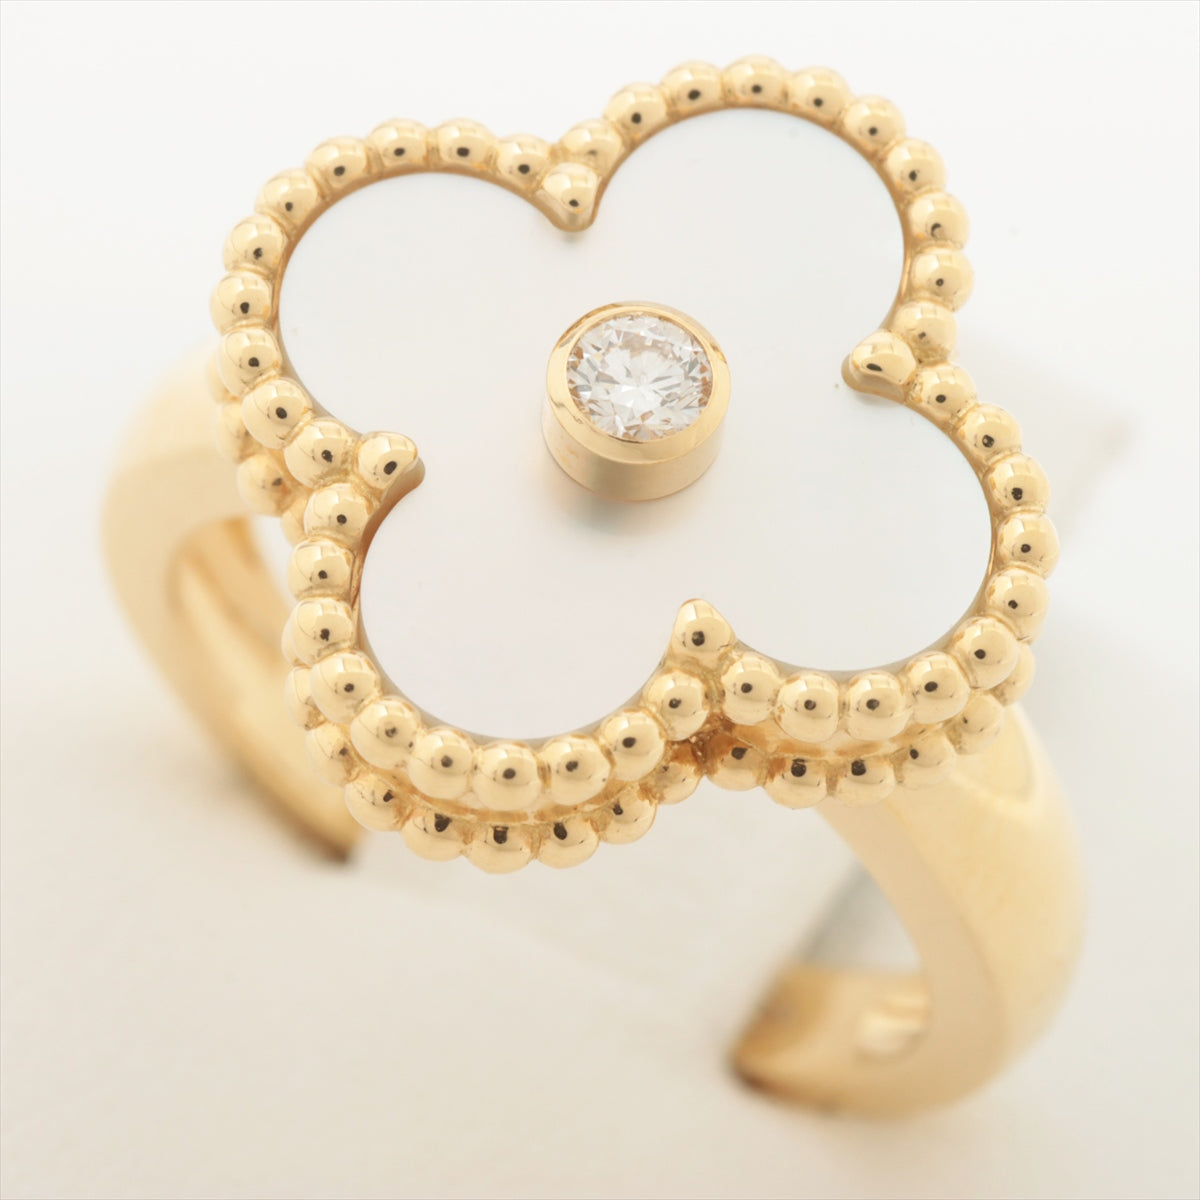 Van Cleef & Arpels Vintage Alhambra diamond shells rings 750(YG) 6.6g 47 VCARA41147